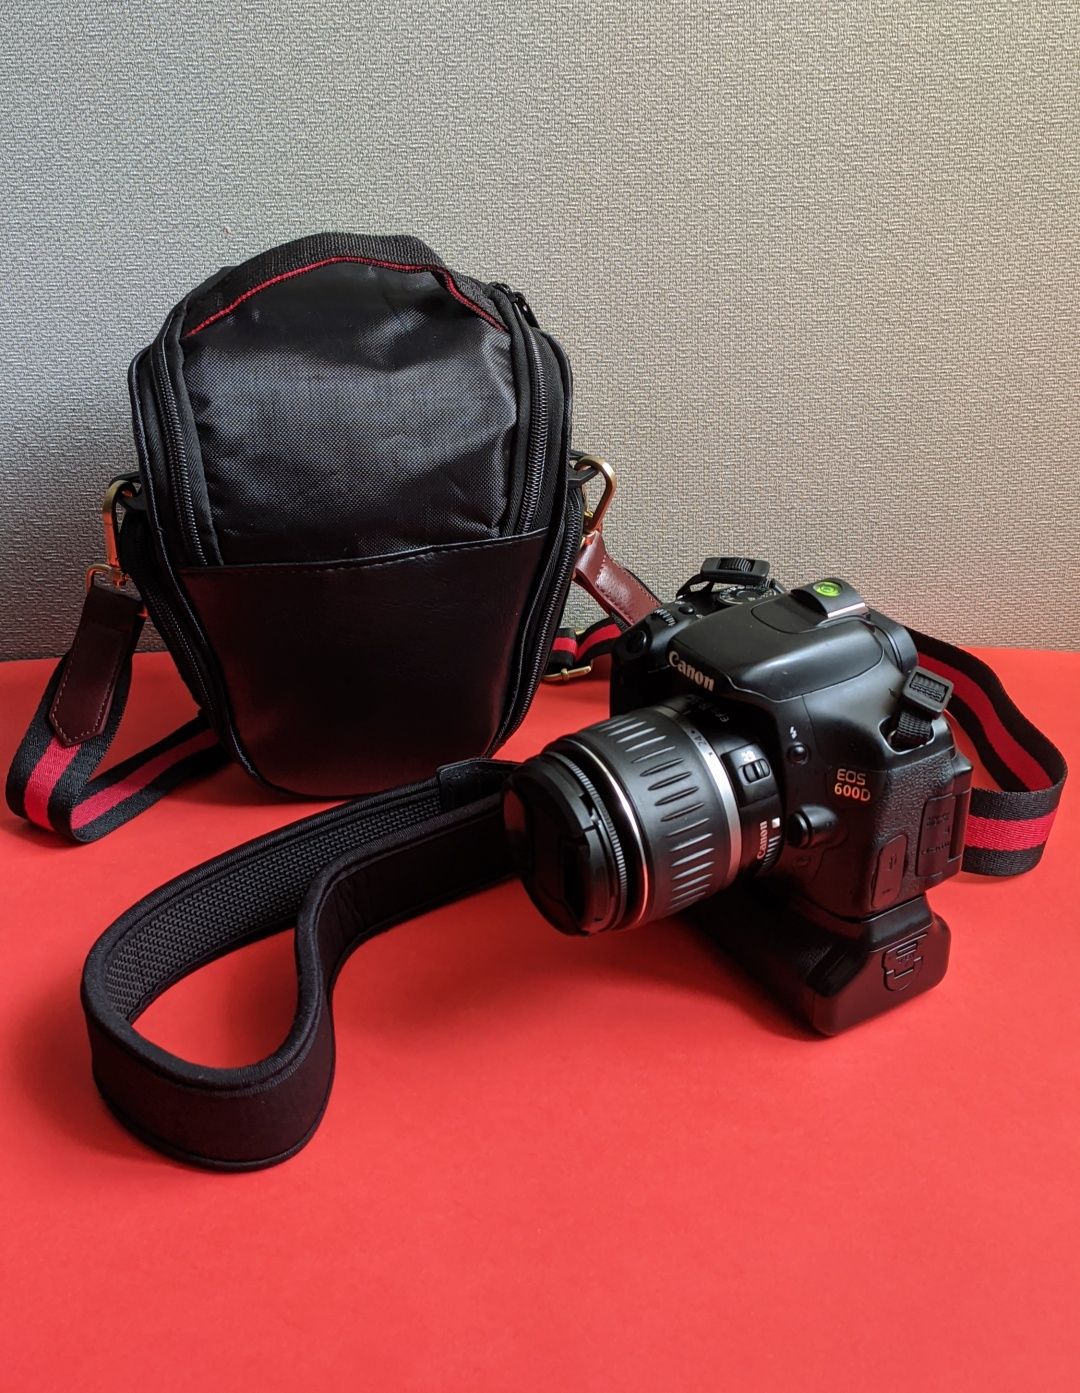 Mega zestaw Canon 600D obiektywy akcesoria grip akumulatory torba